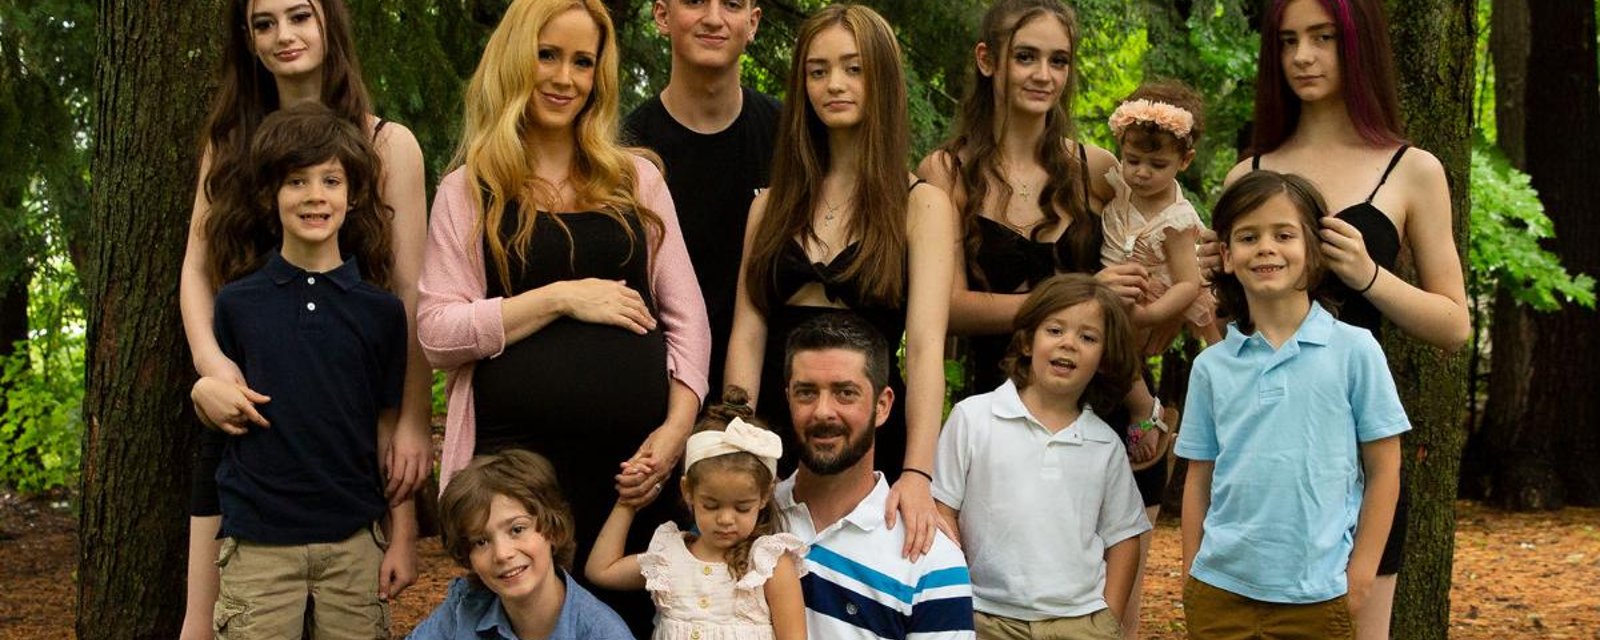 La famille Groulx partage une première échographie de leur douzième bébé